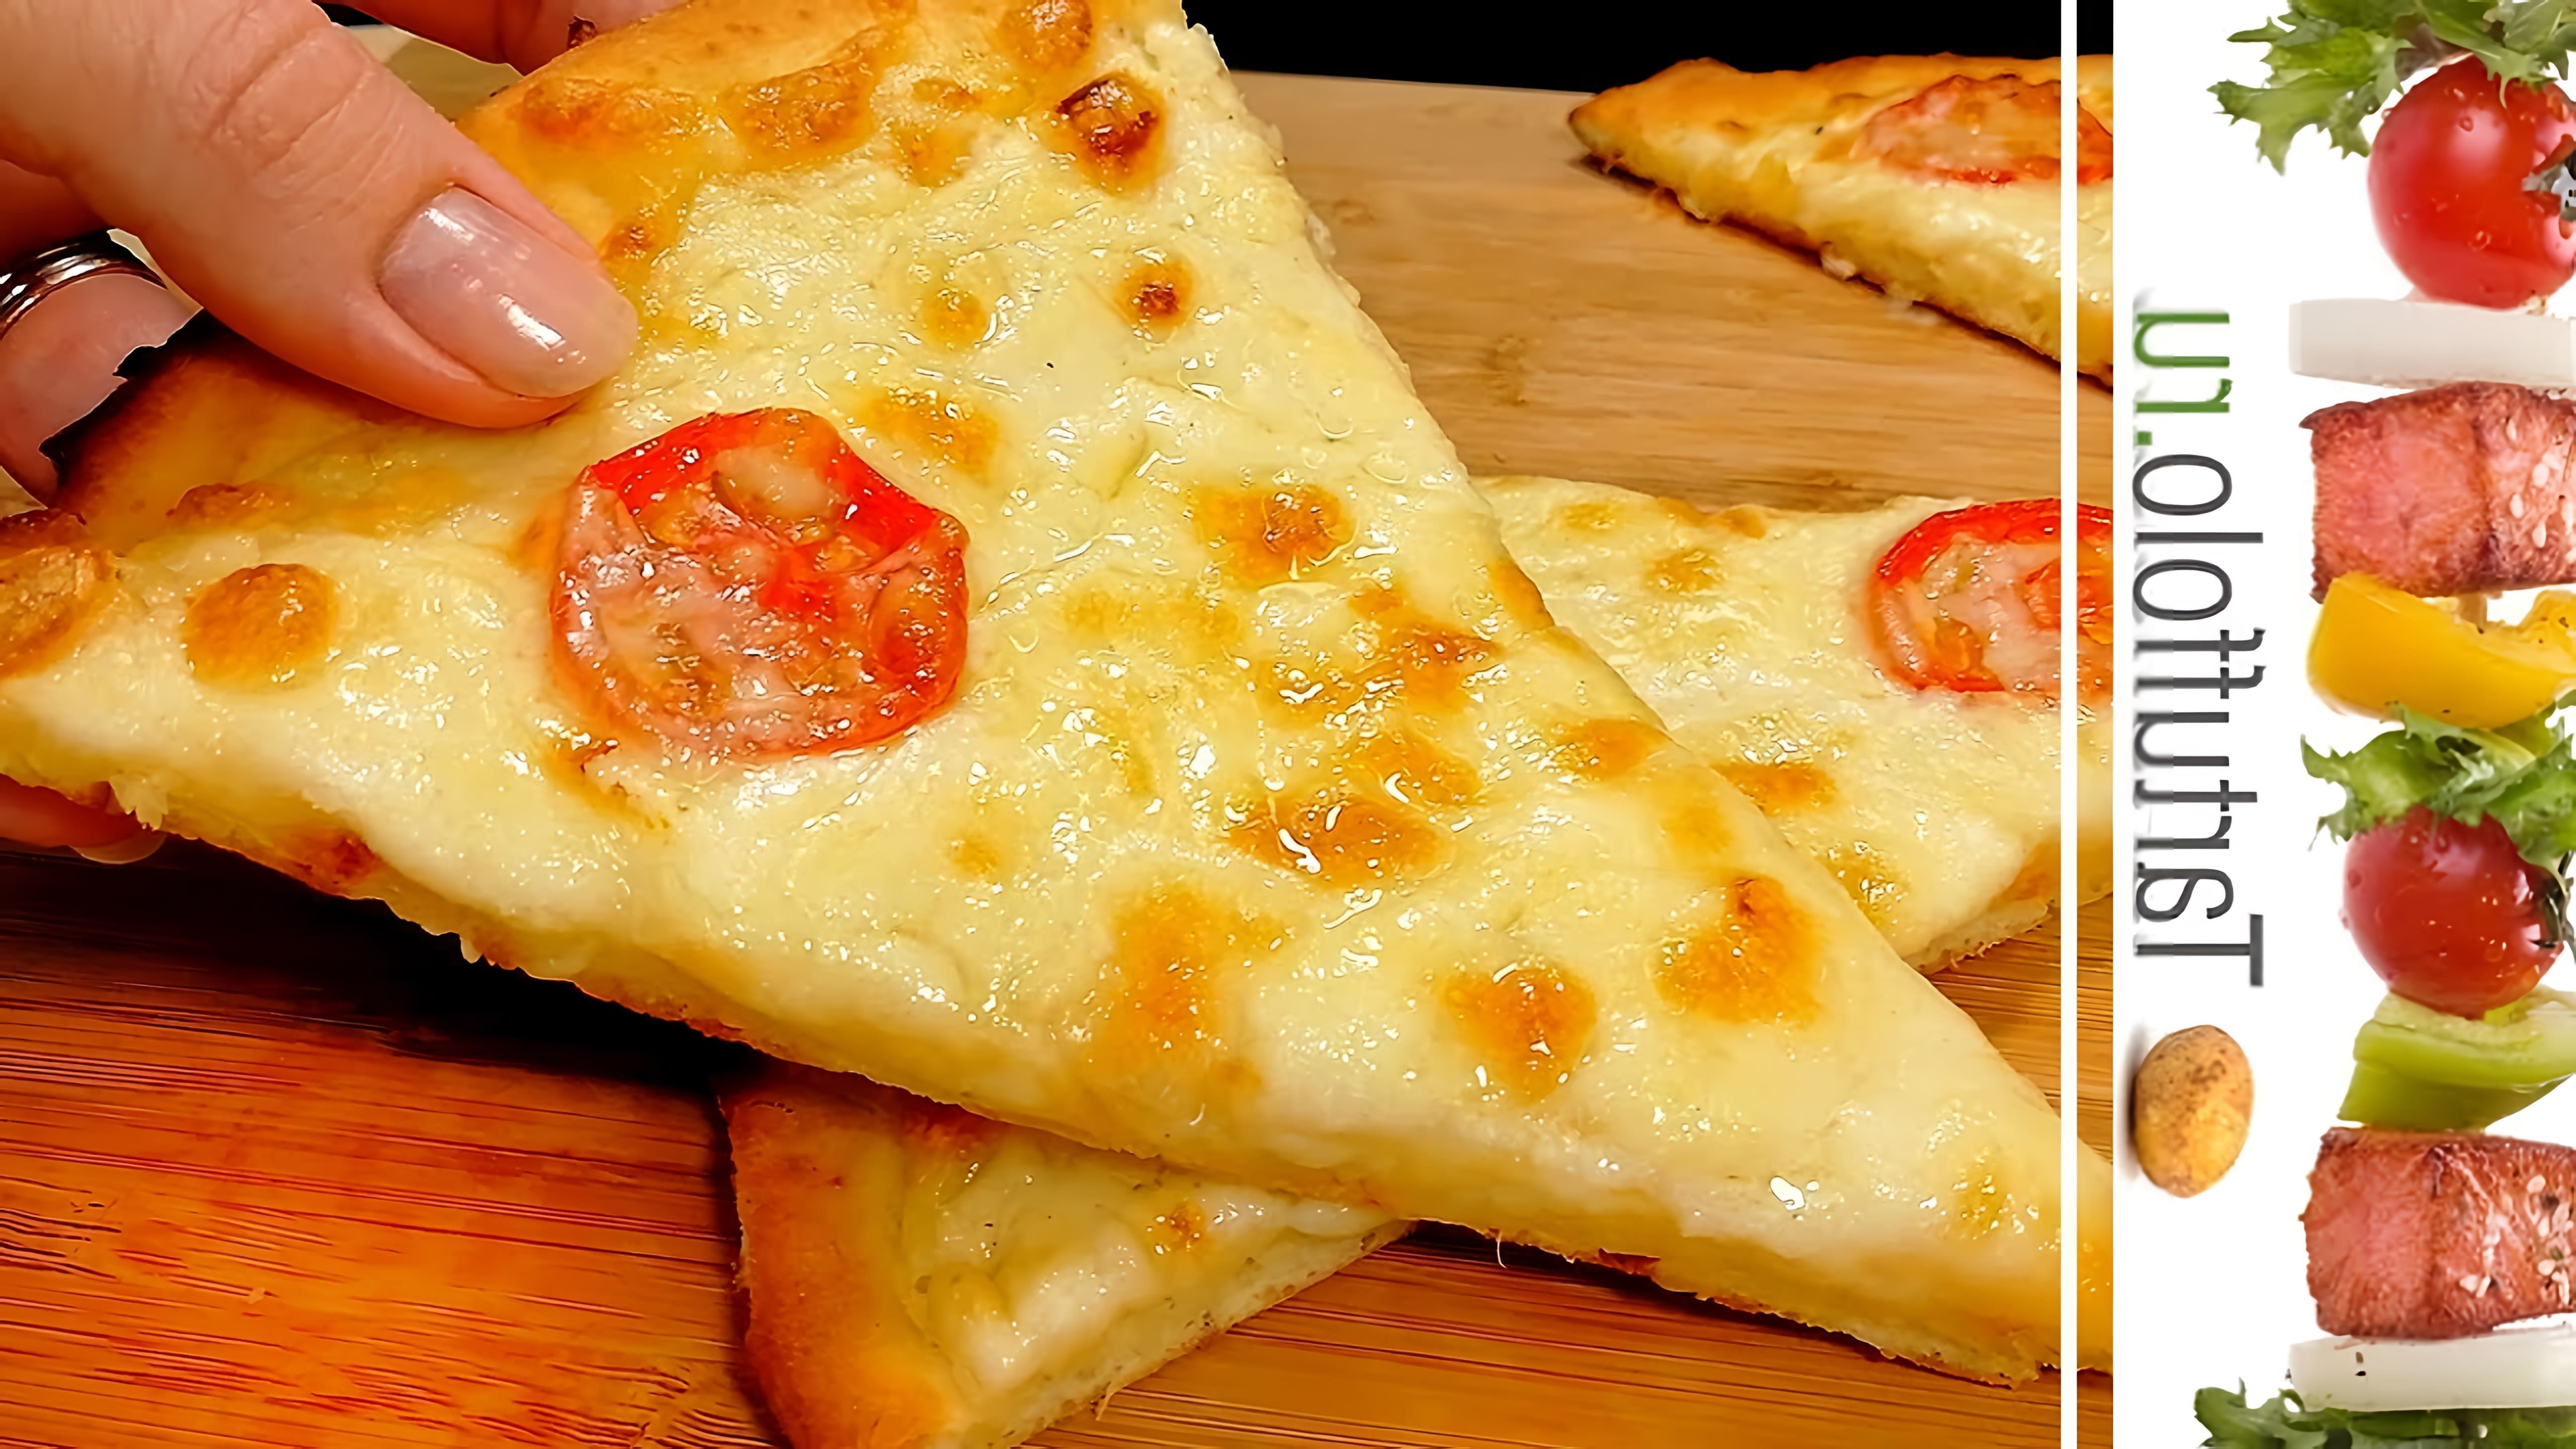 В этом видео демонстрируется процесс приготовления быстрой домашней пиццы на творожном тесте с нежным сливочным соусом и аппетитной сырной корочкой